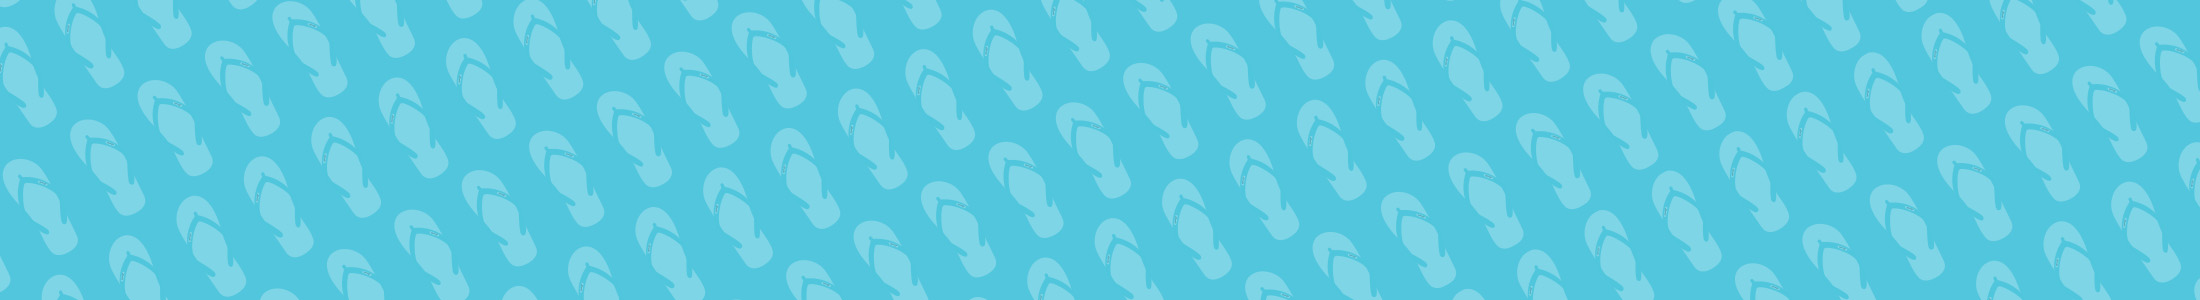 bg slipper pattern blue